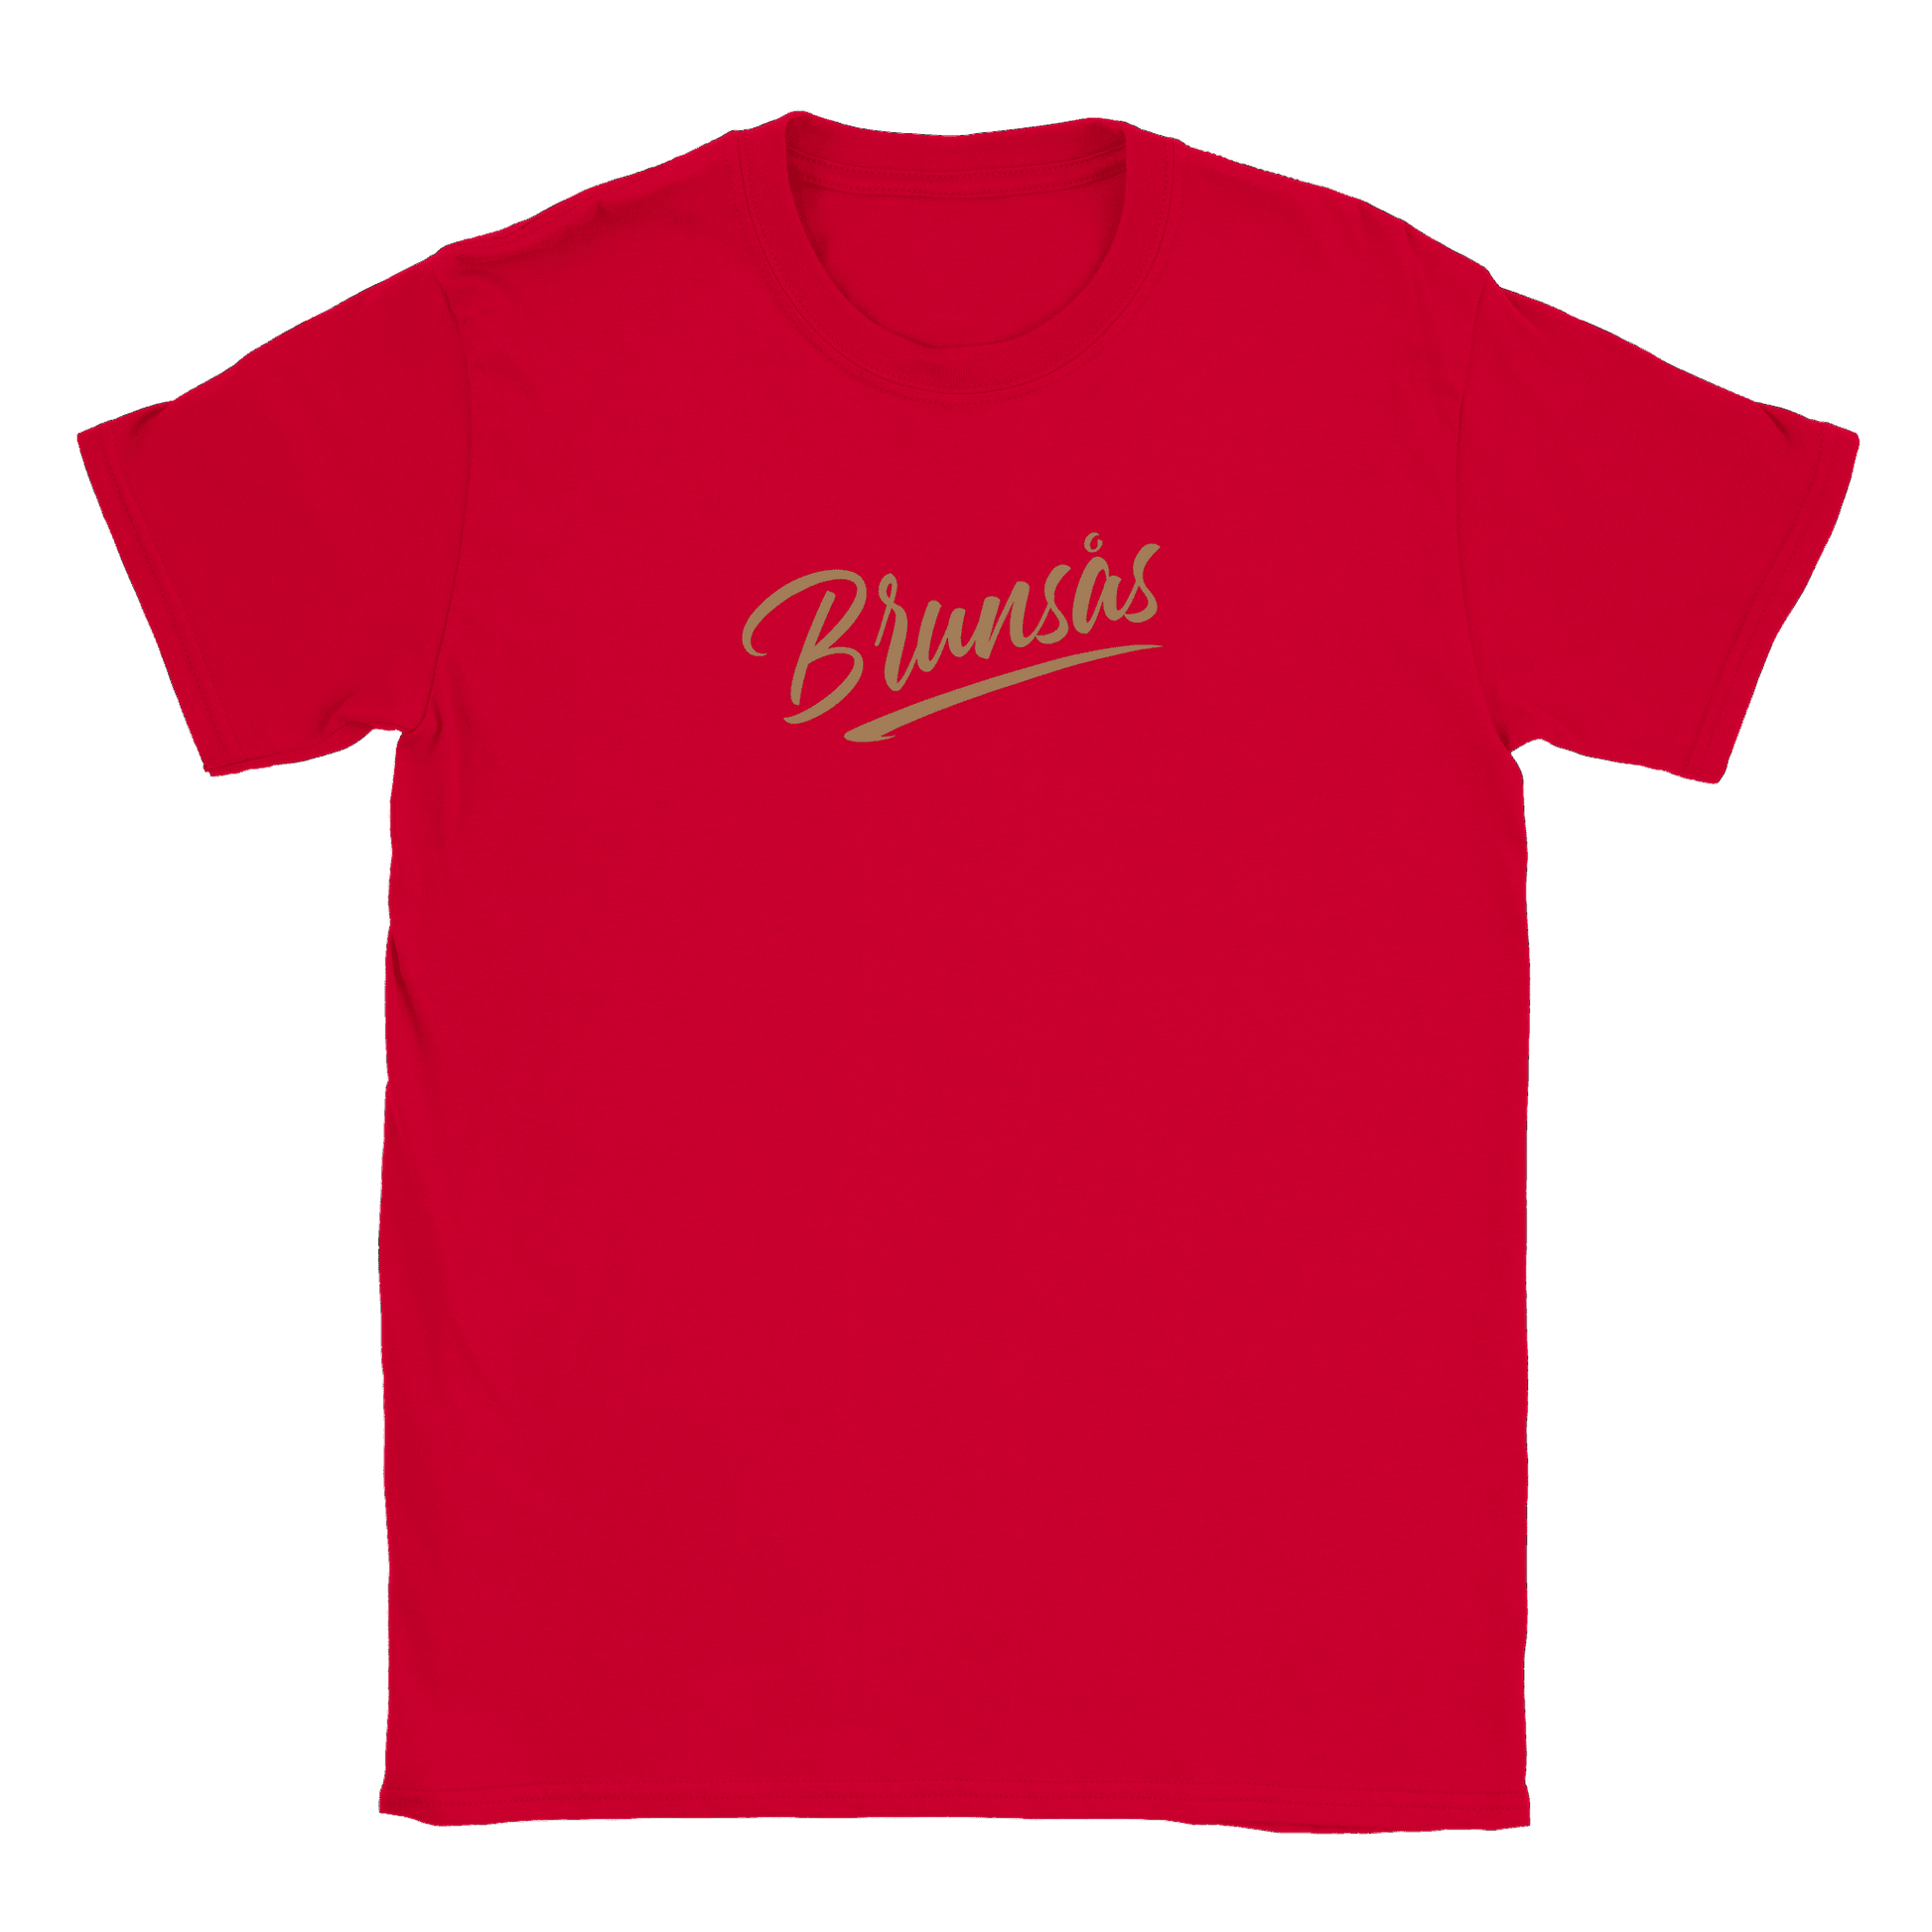 Brunsås - T-shirt Röd